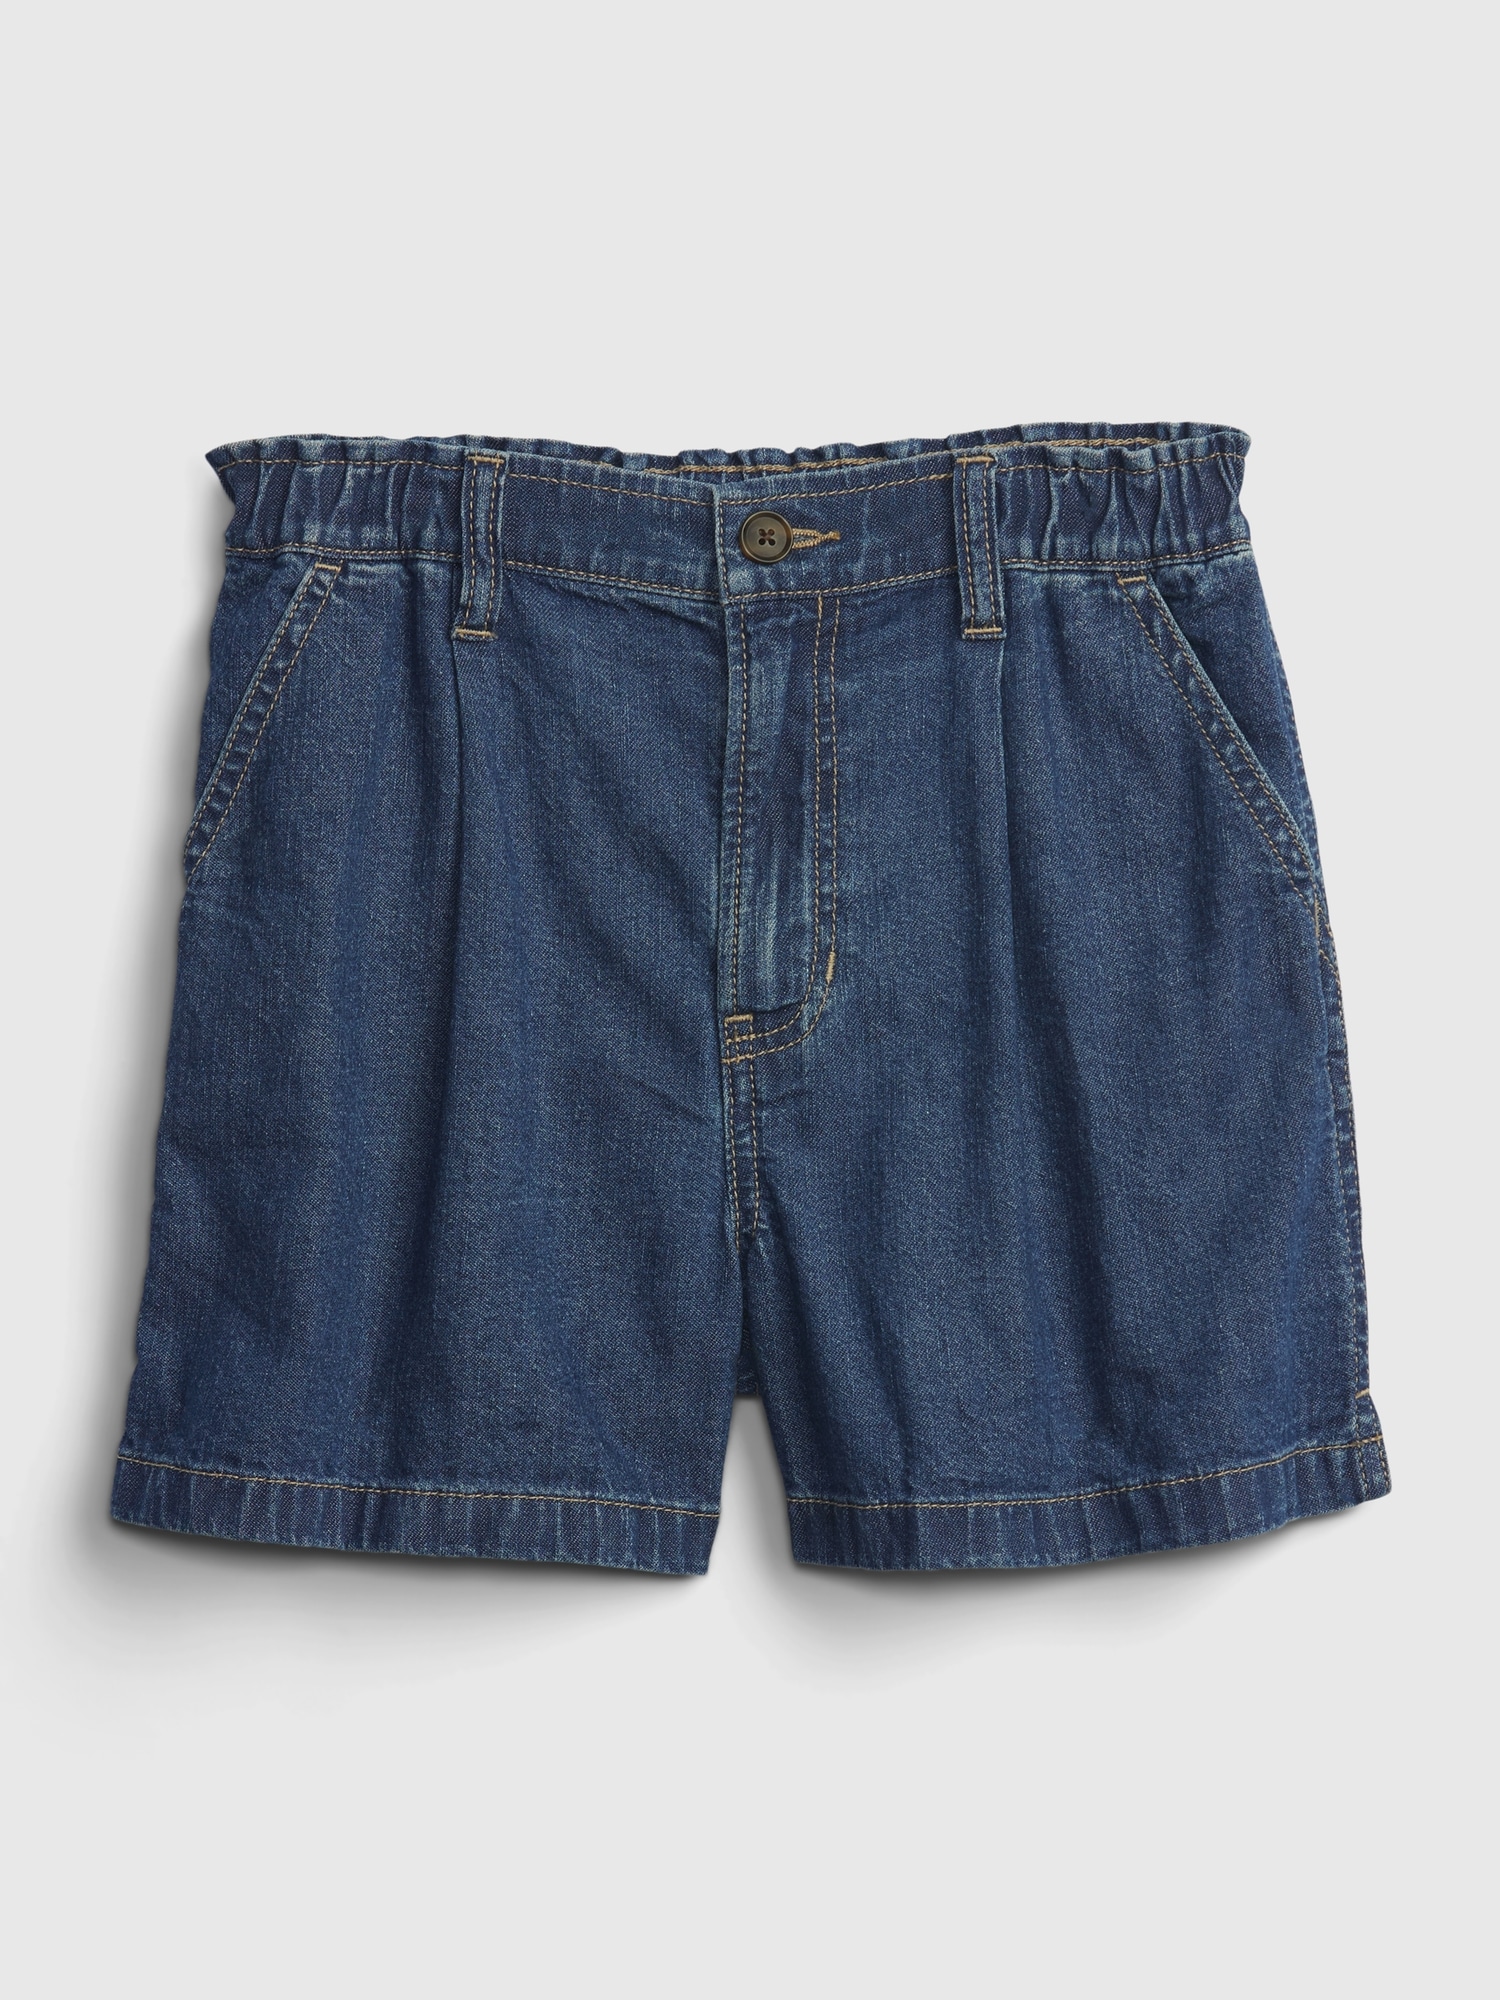 Shorts | Kids Gap Jeans